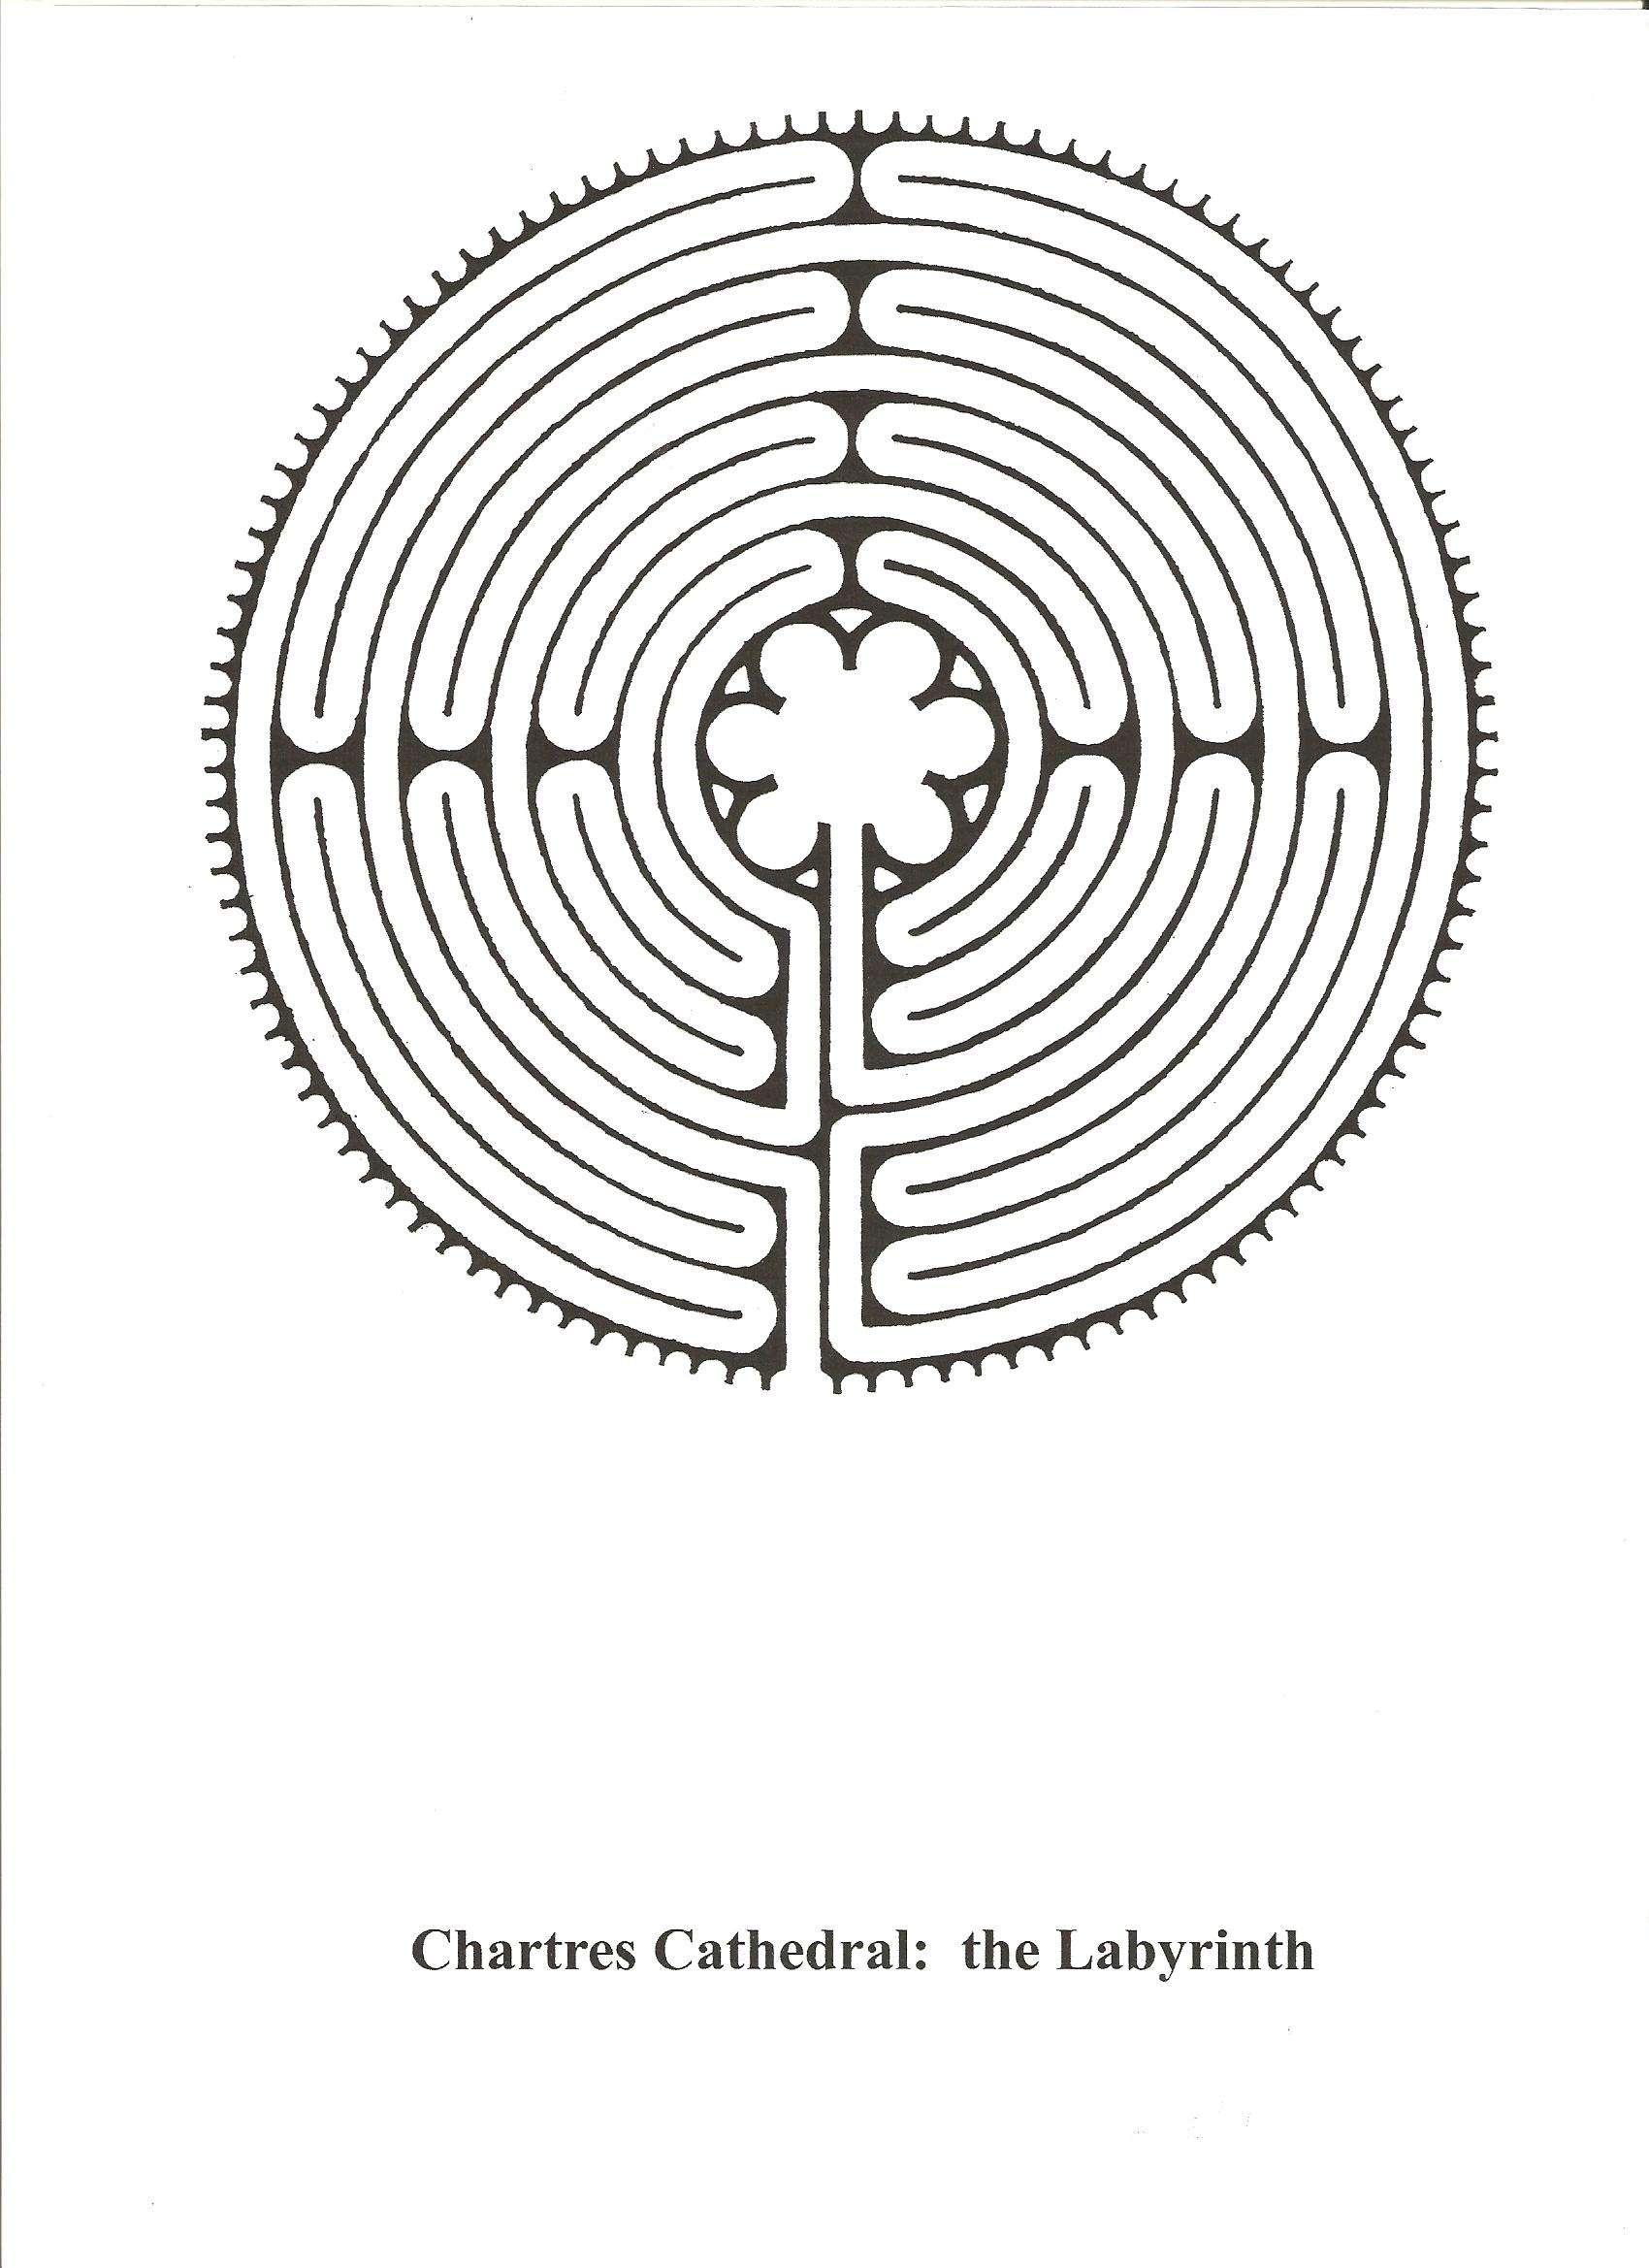 Chartres: Arte, espiritualidad y esoterismo. - Blogs de Francia - La catedral como símbolo del camino espiritual (1)